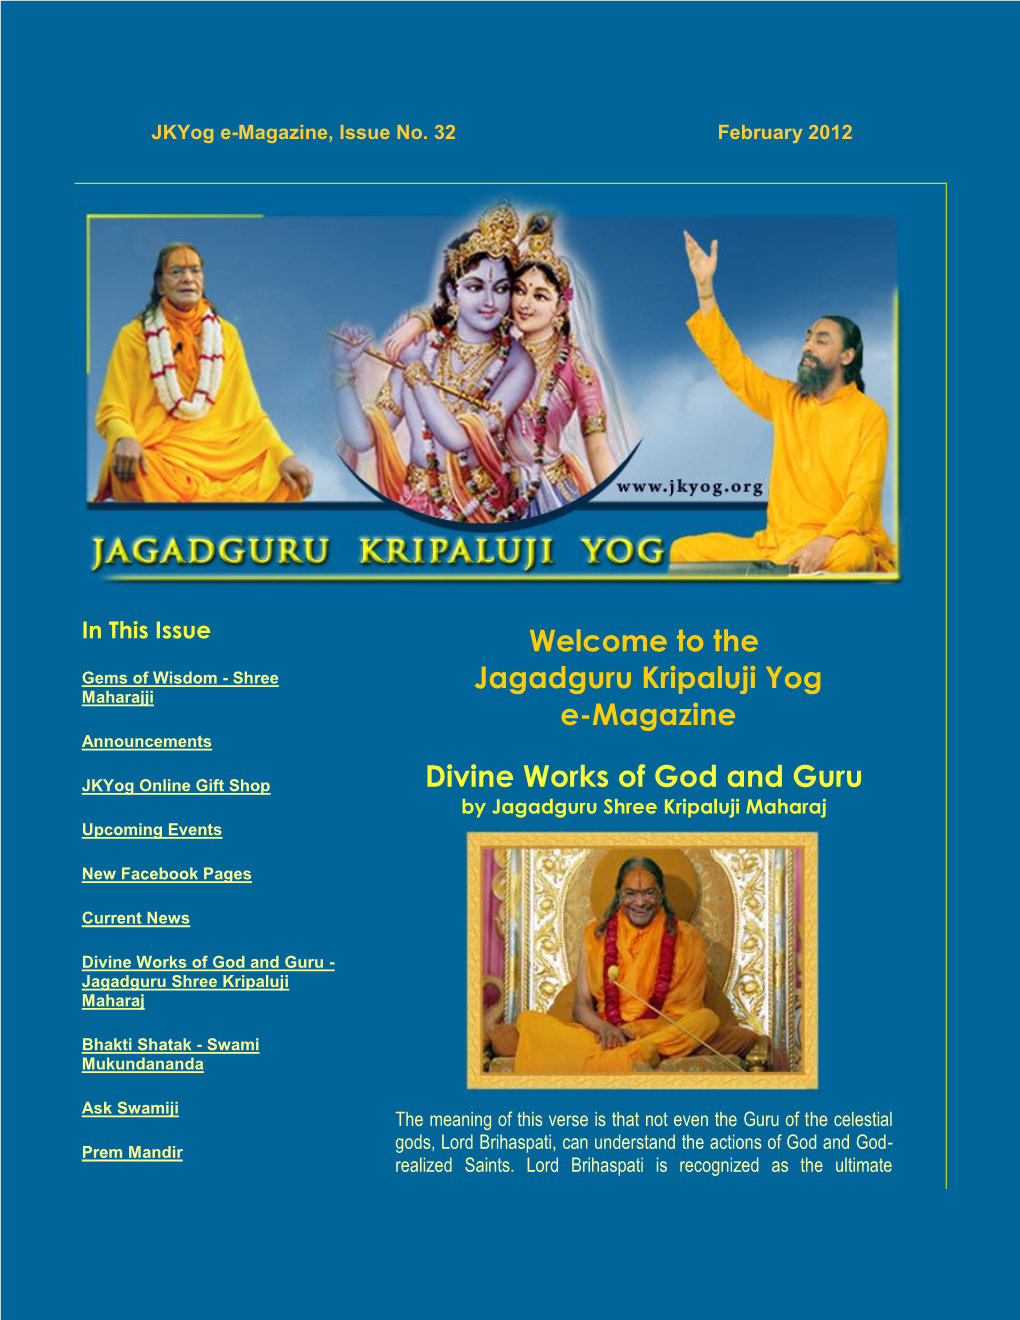 Welcome to the Jagadguru Kripaluji Yog E-Magazine